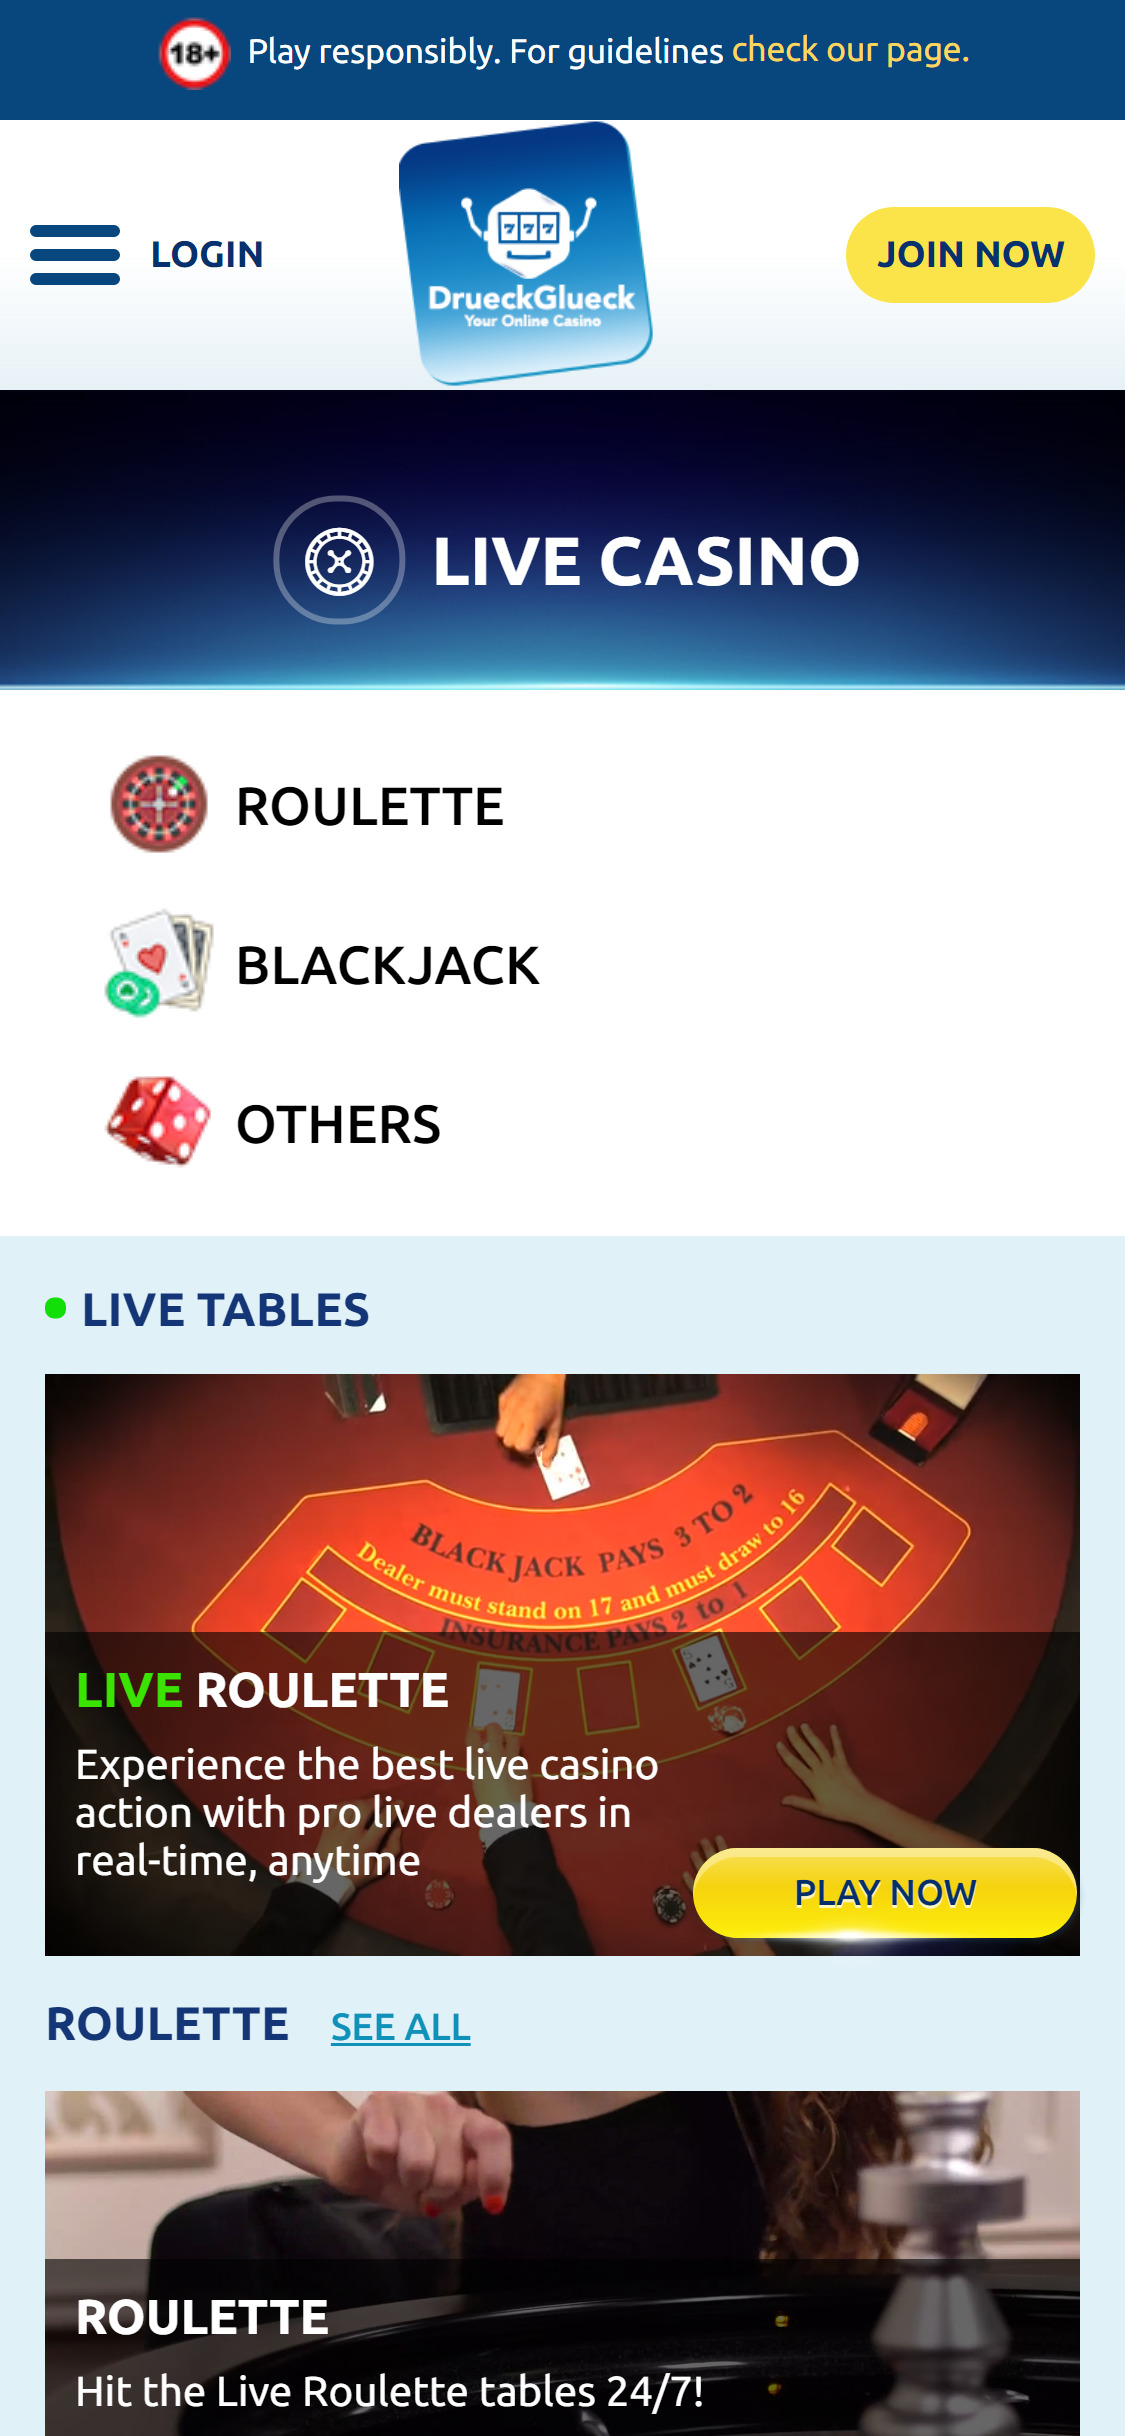 Drueck Glueck Casino Mobile Live Dealer Games Review